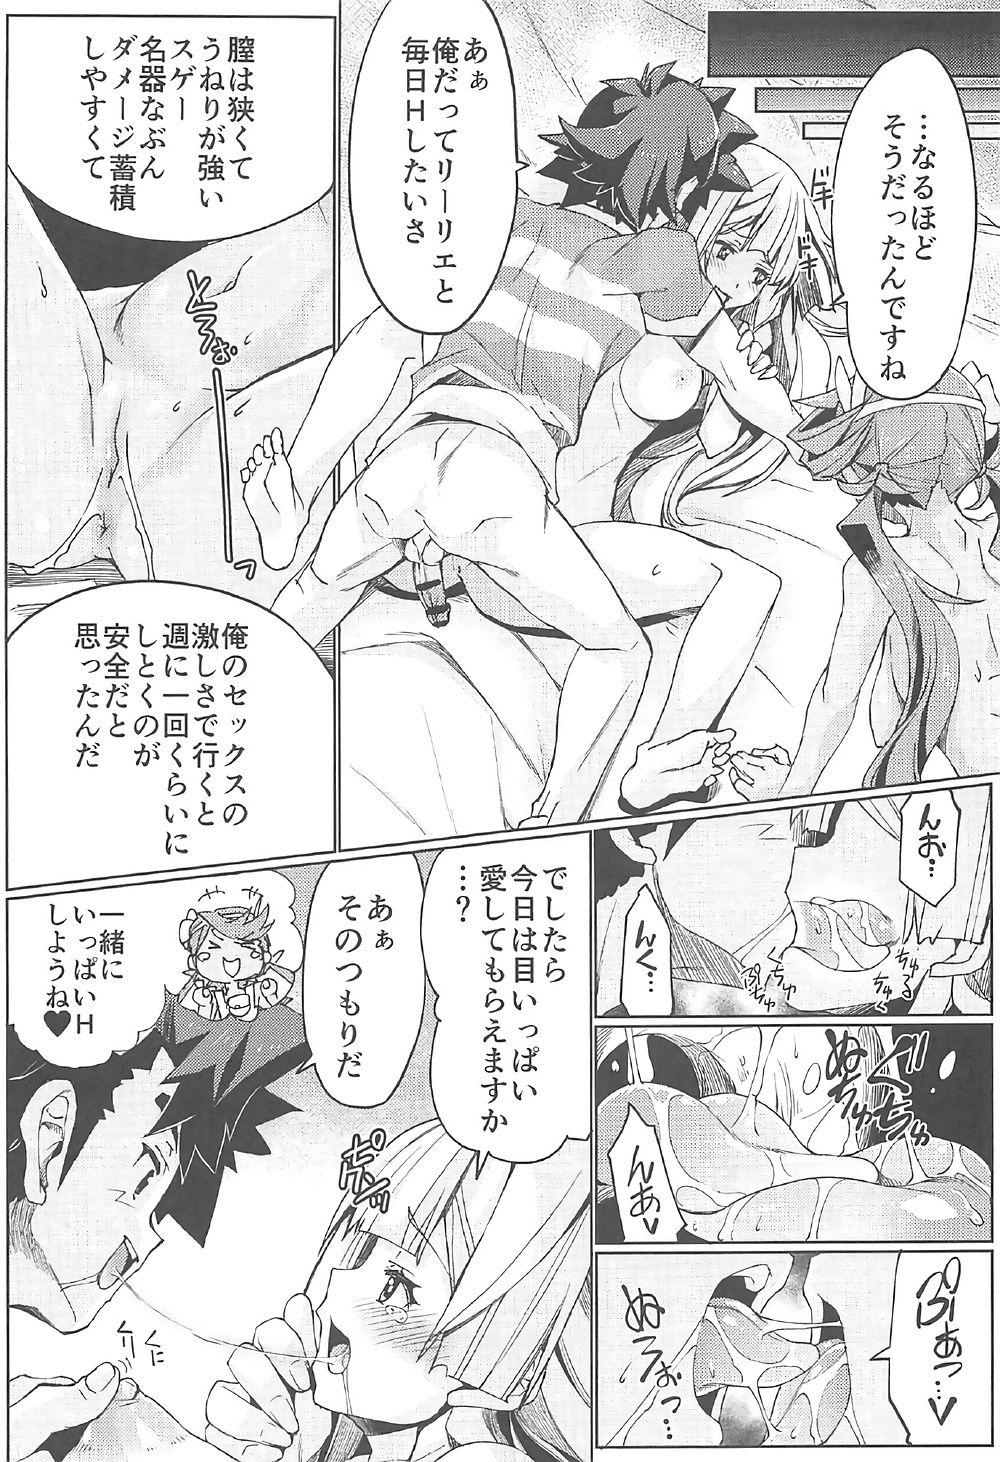 Gozada Watashi ga sono Ki ni nareba Ronriteki ni! 2!! - Pokemon Cartoon - Page 10